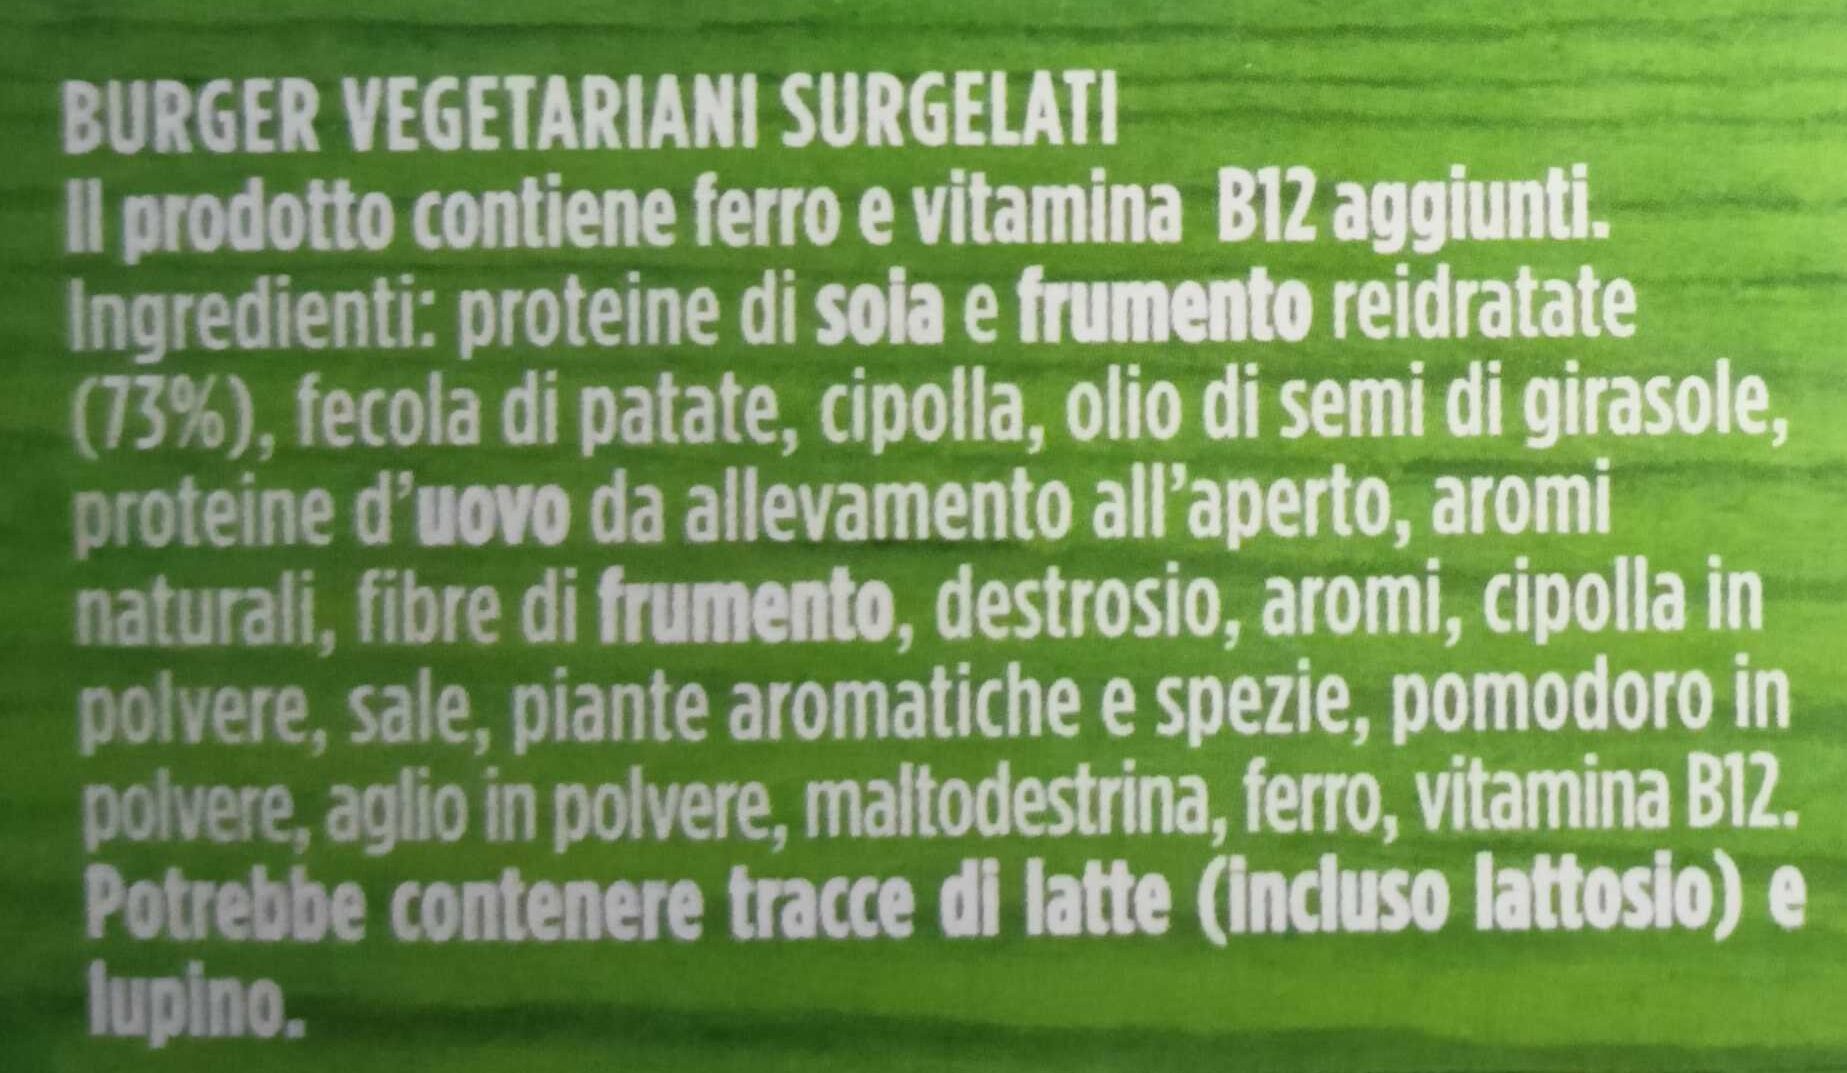 Burger vegani - Ingredienti